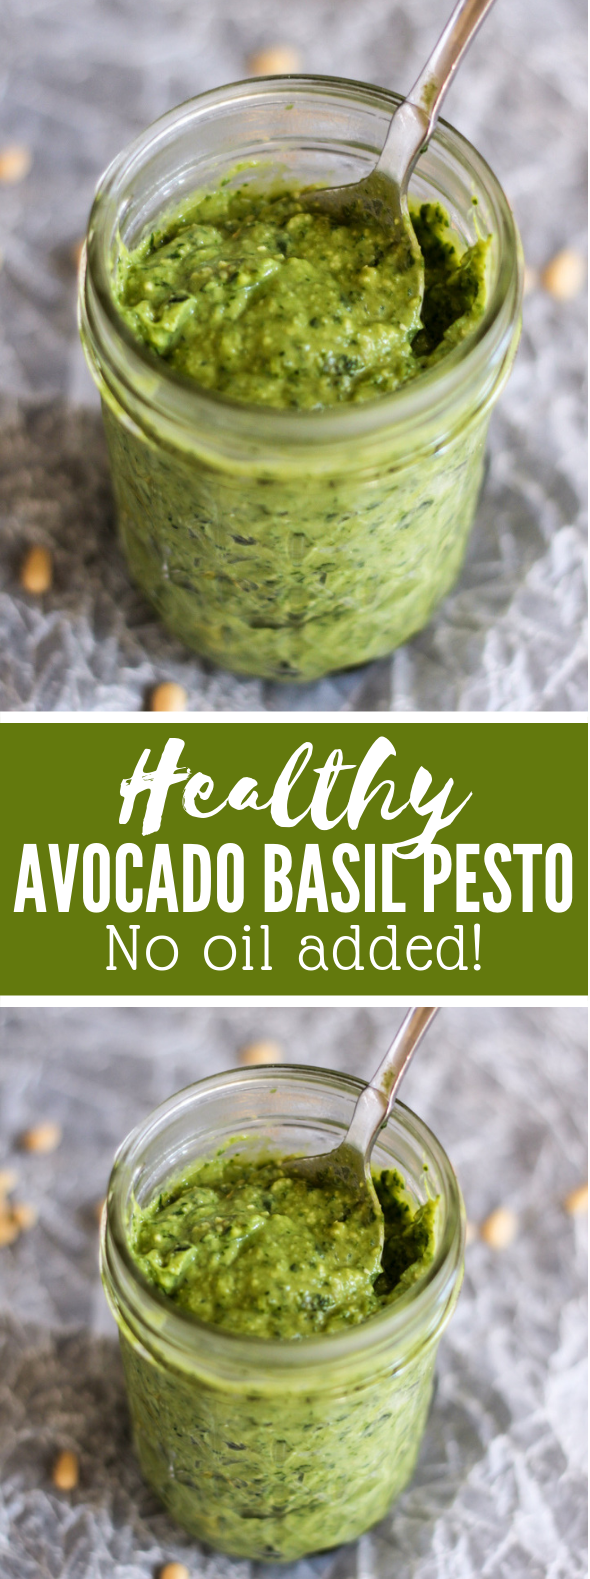 How to Make Lightened-Up Pesto: A Recipe for Creamy Avocado Basil Pesto #healthy #glutenfree